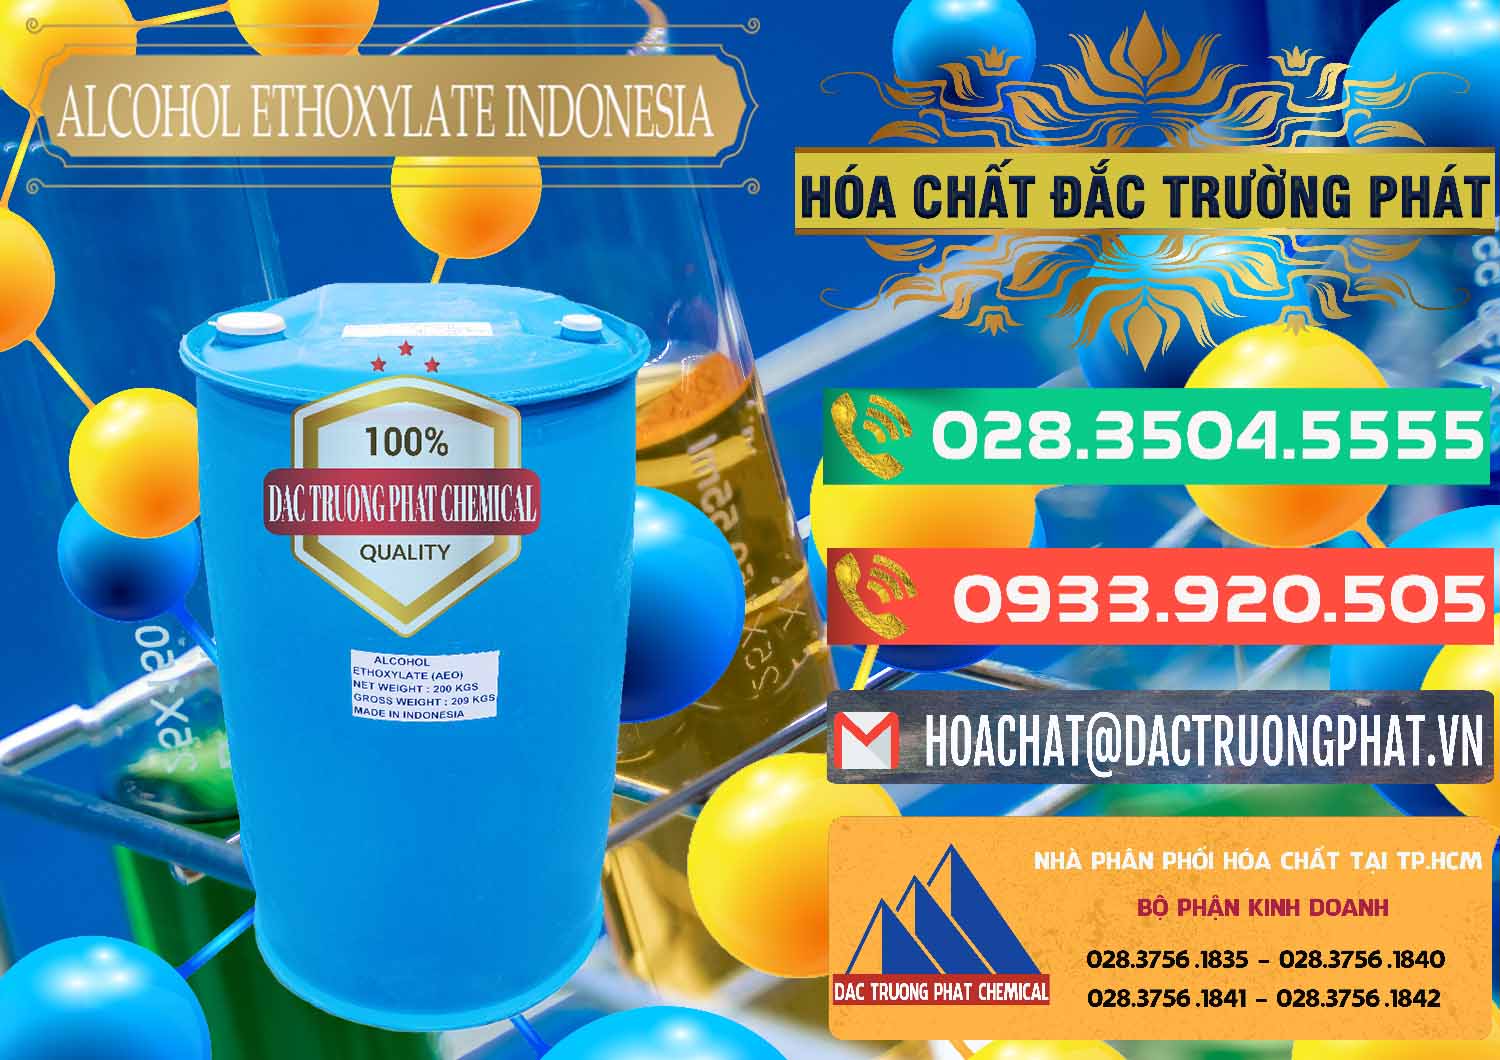 Cty bán & cung cấp Alcohol Ethoxylate Indonesia - 0308 - Công ty chuyên cung cấp ( kinh doanh ) hóa chất tại TP.HCM - congtyhoachat.com.vn